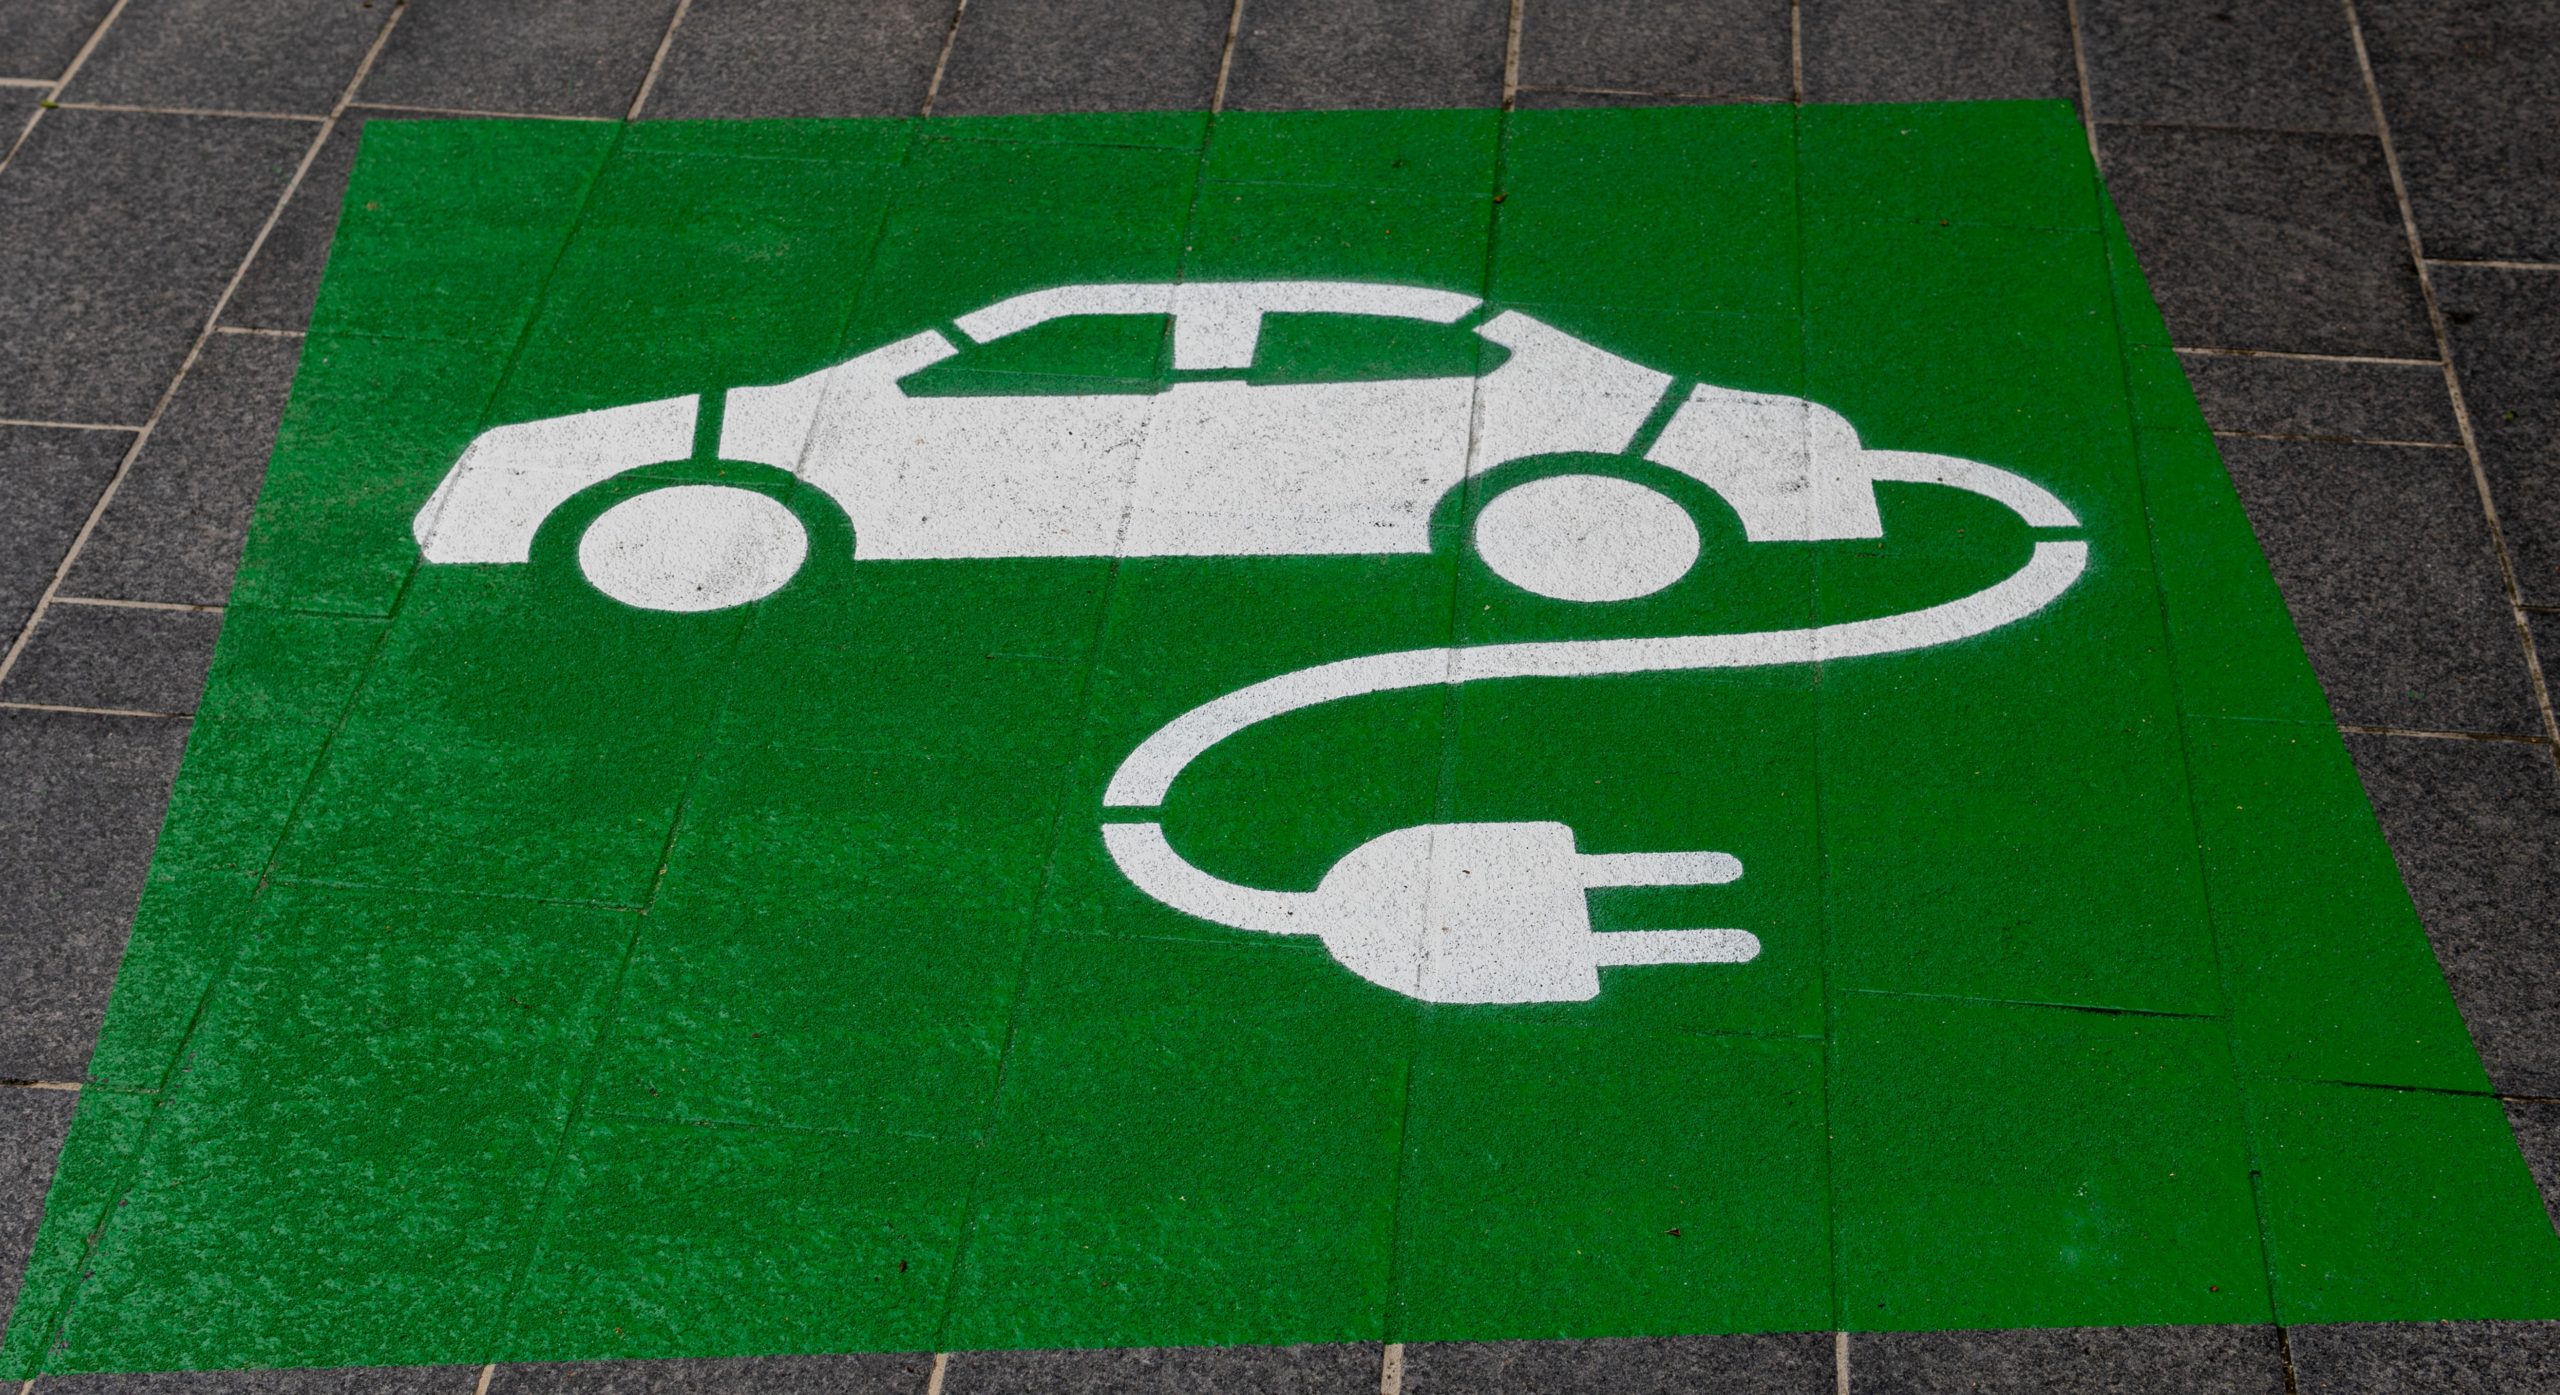 Un appel à projet et un facilitateur pour accélérer l’installation de bornes de recharge pour véhicules électriques à Bruxelles